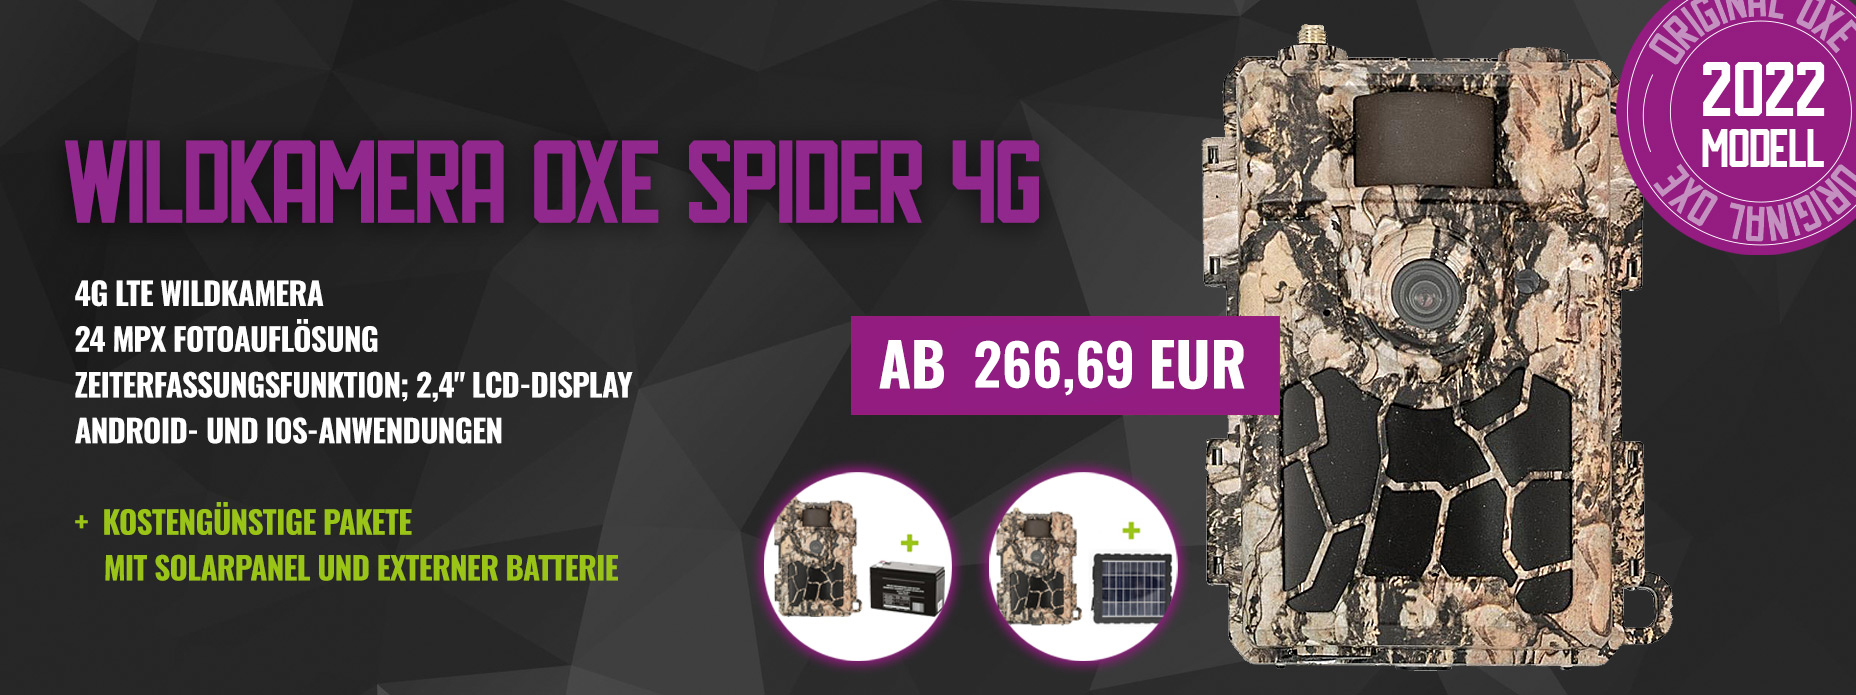 Wildkamera OXE Spider 4G